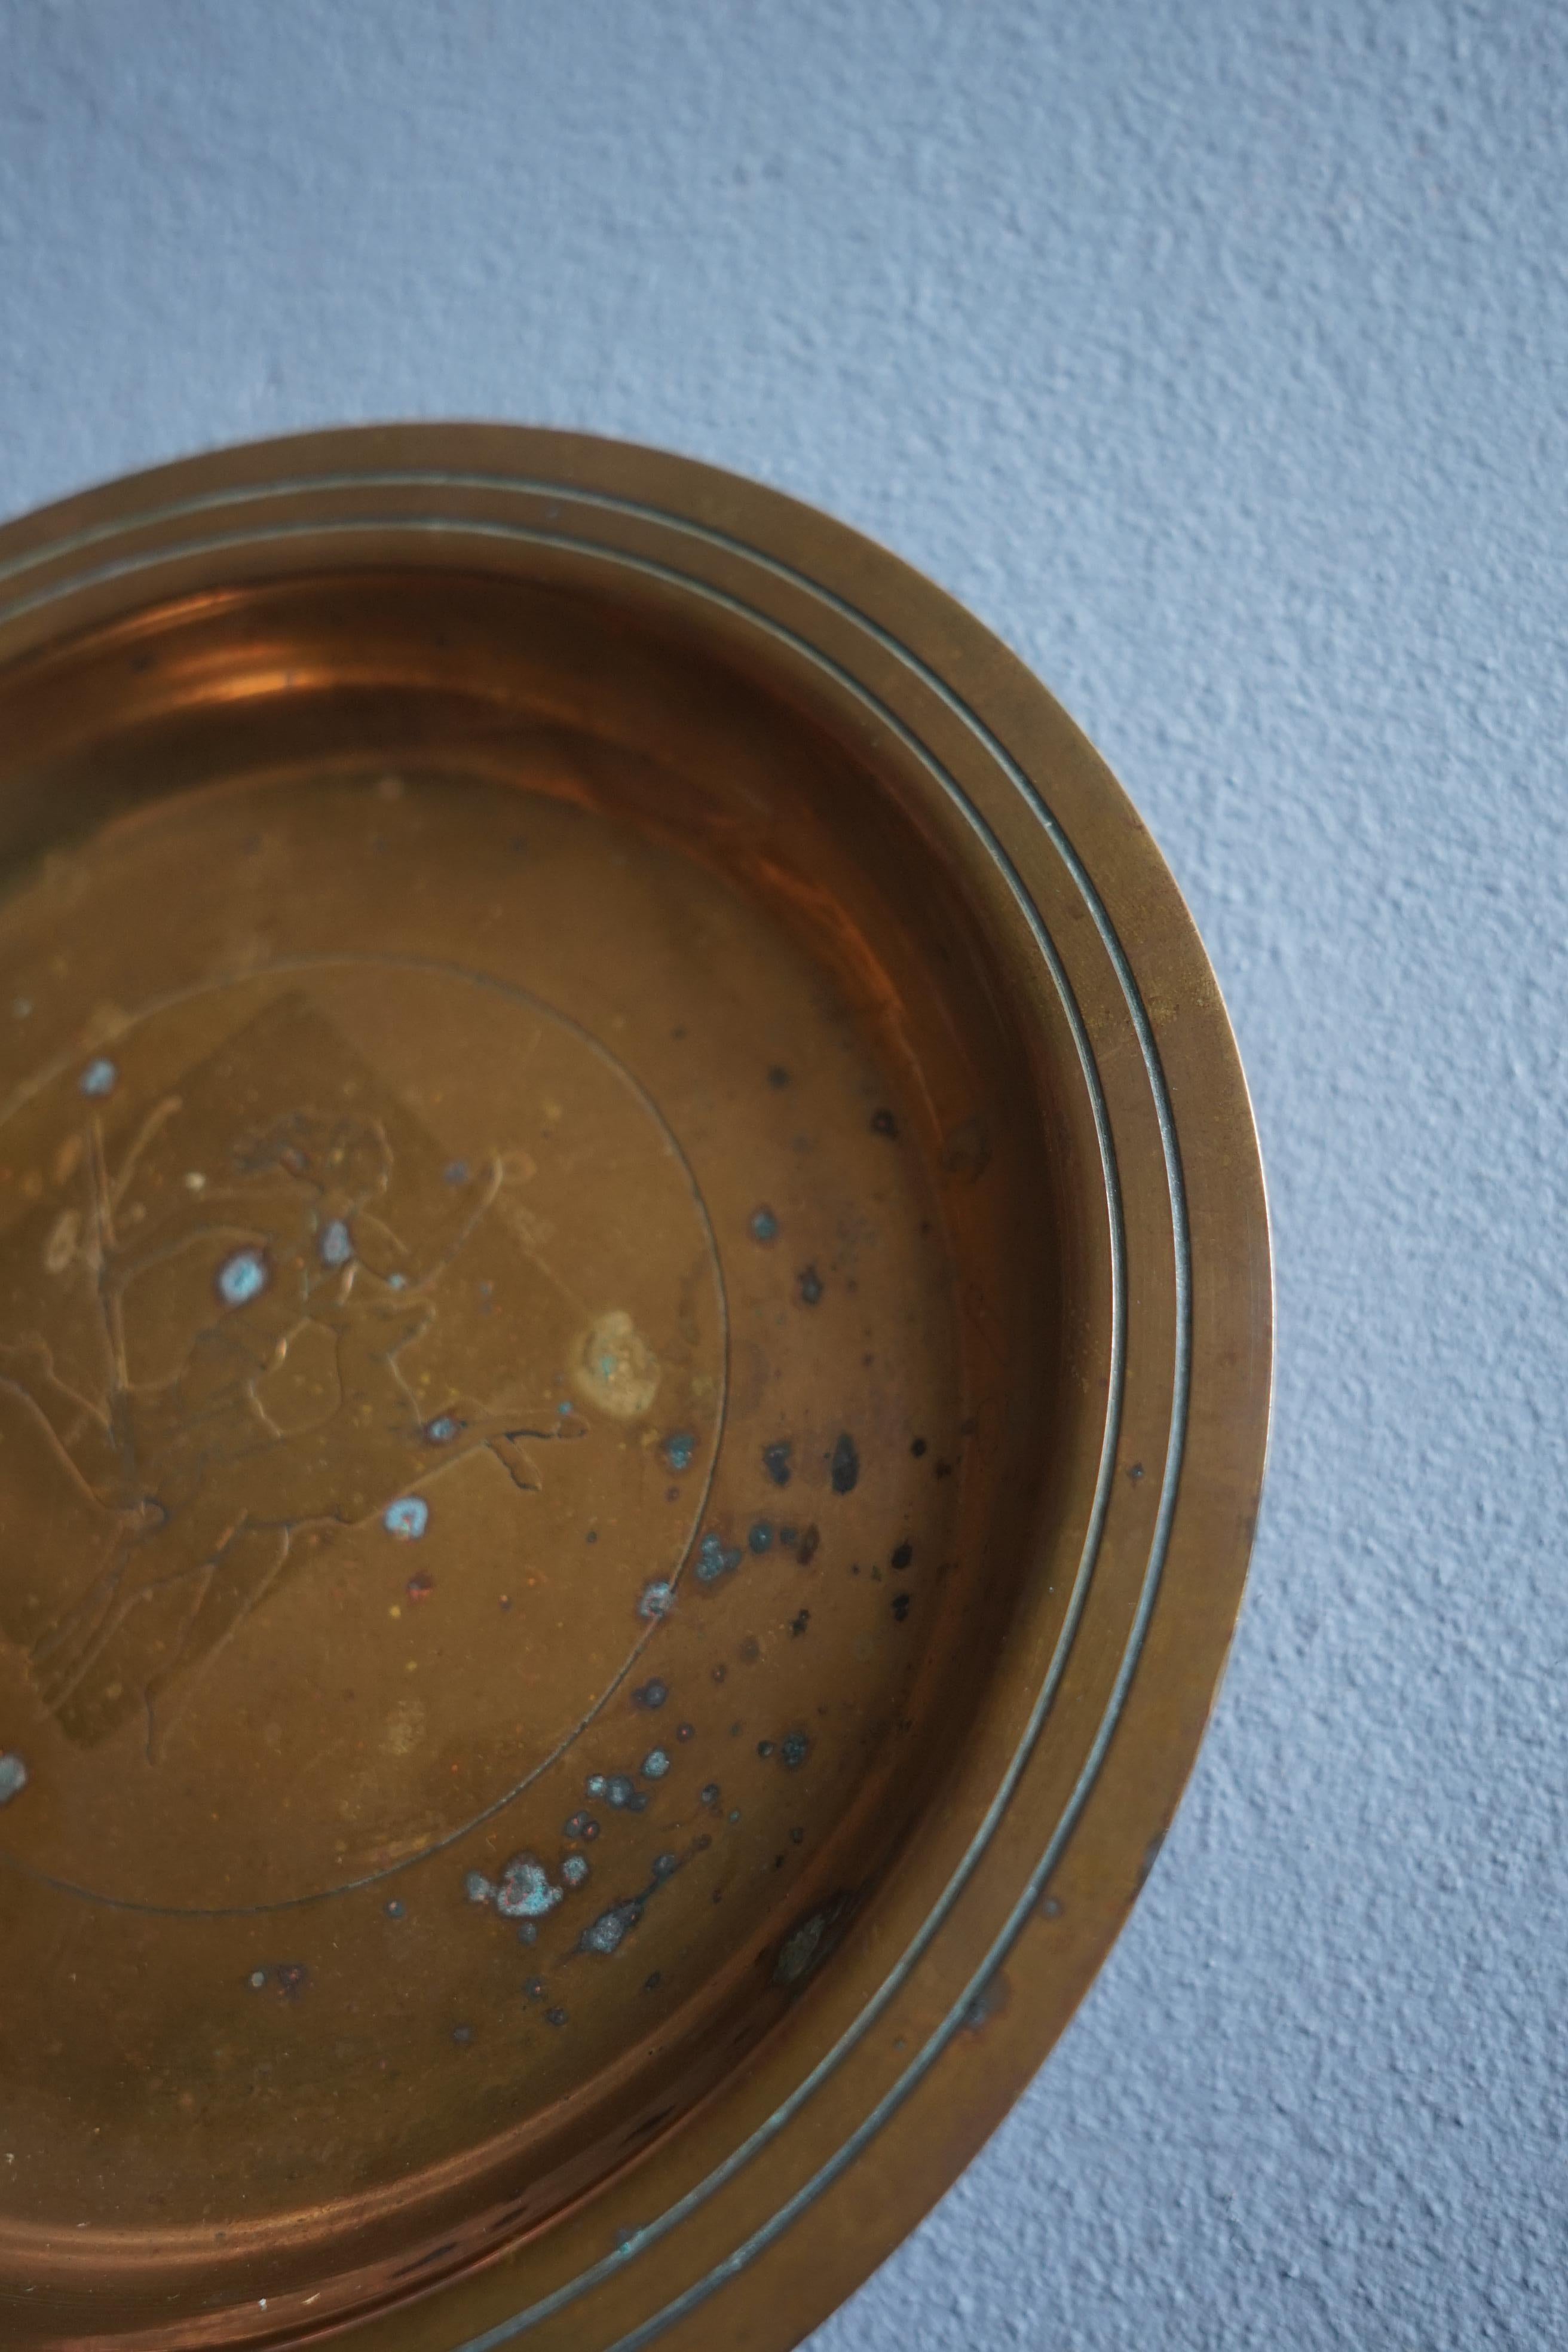 Schöne patinierte Art Deco Bronzeschale der dänischen Manufaktur Agentor aus den 1930er Jahren.

The Dish hat das Motiv einer Frau, die mit ihrem Jagdhund neben sich herläuft.

Diese Schale eignet sich perfekt als dekoratives Element, kann aber auch